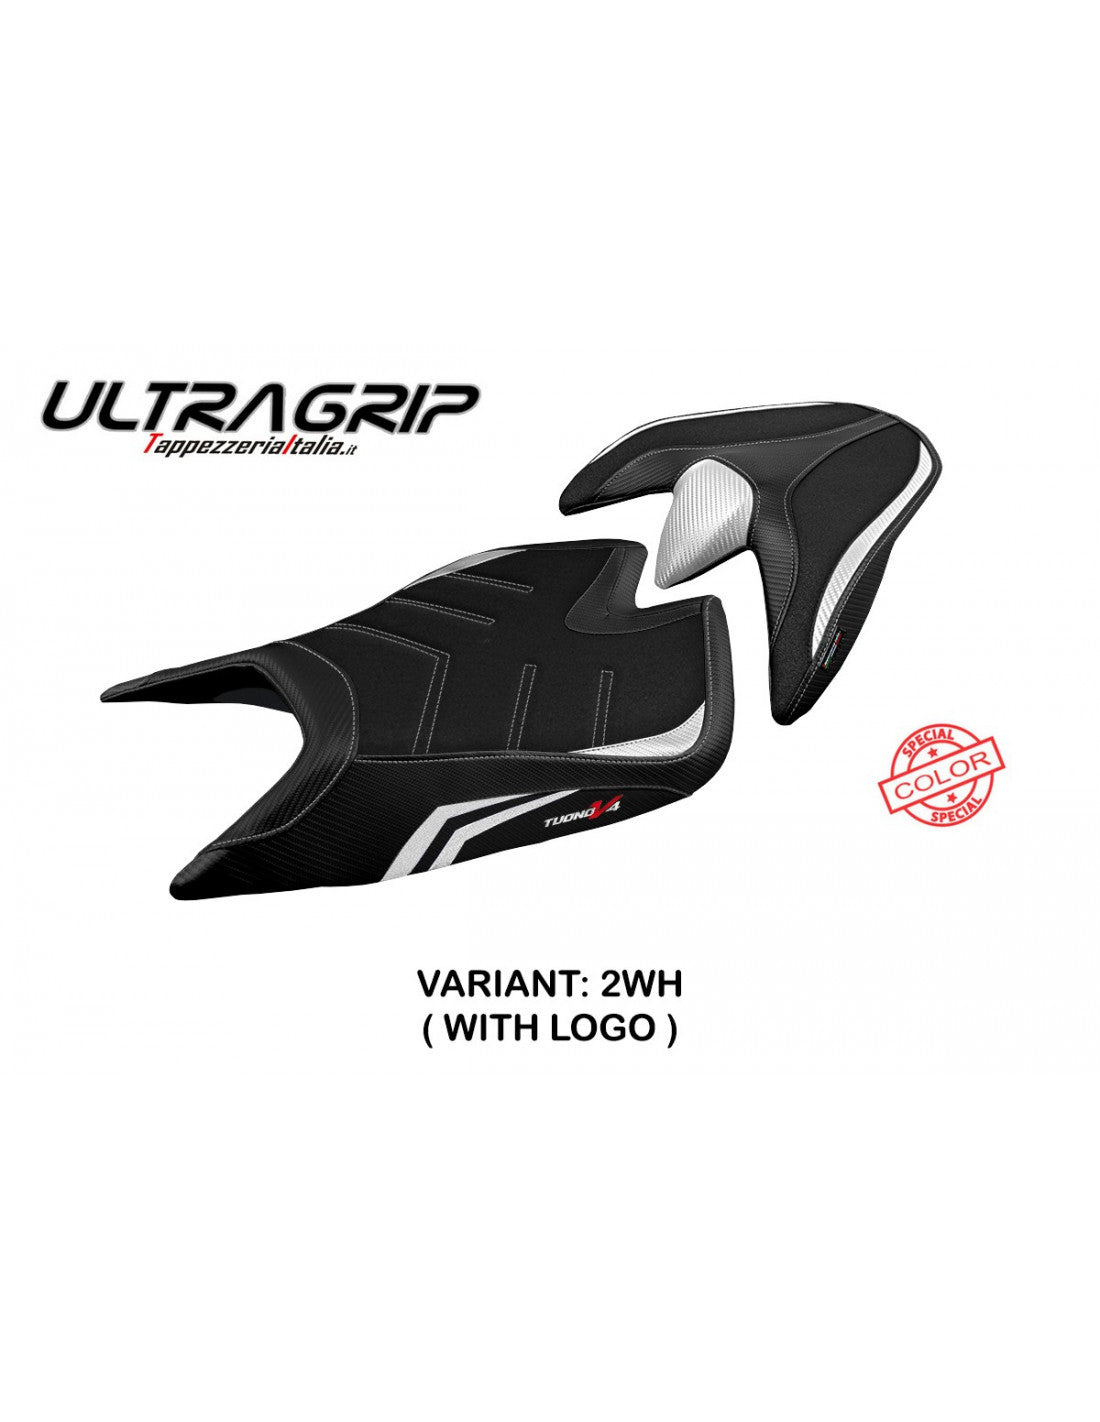 Tappezzeria Zuera Special Color Ultragrip Seat Cover for Aprilia Tuono V4 1100 RR